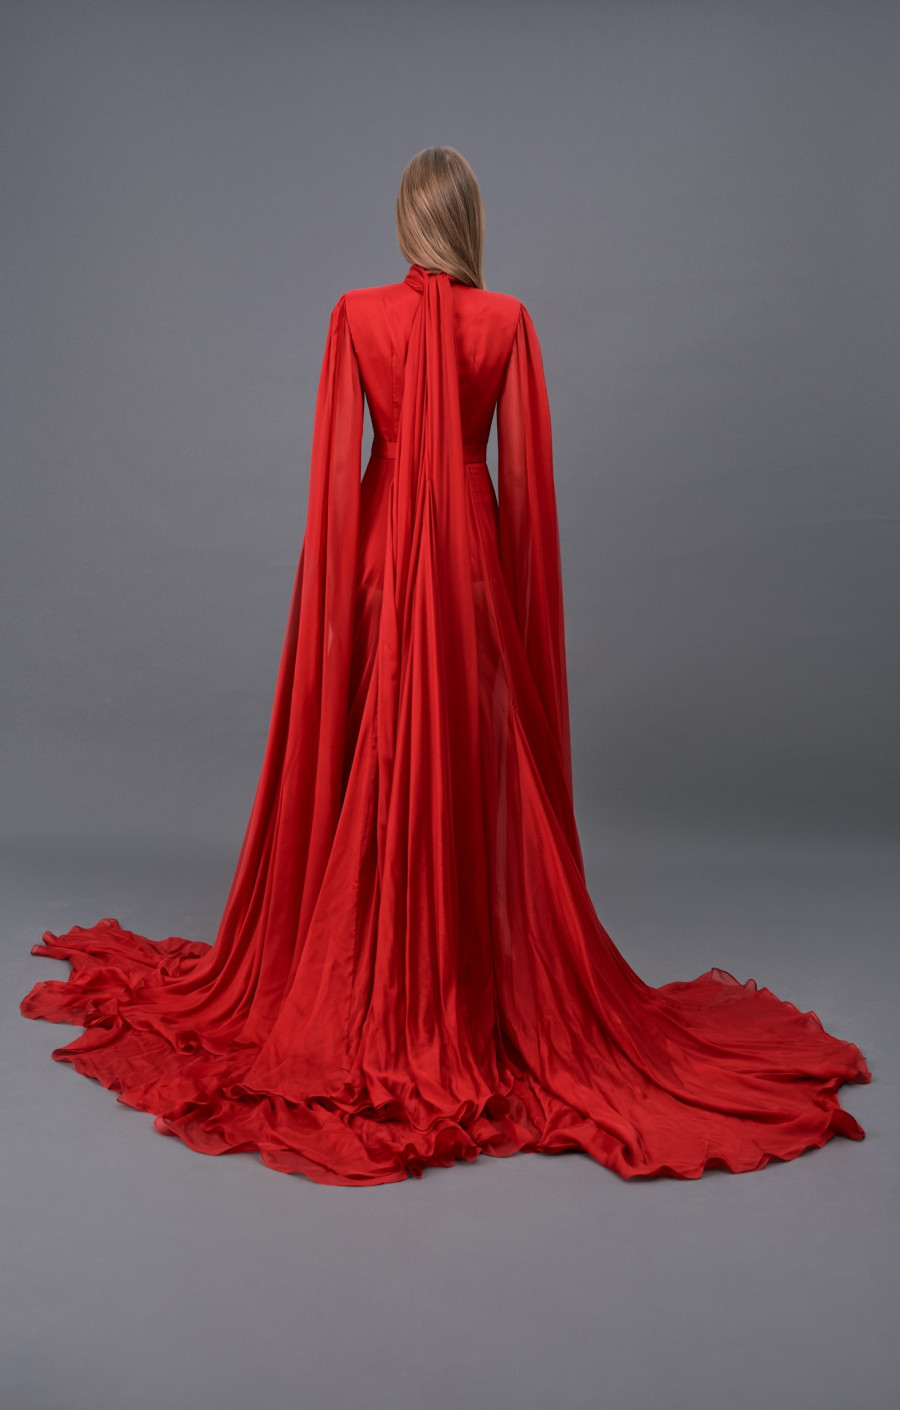 Red chiffon dress 